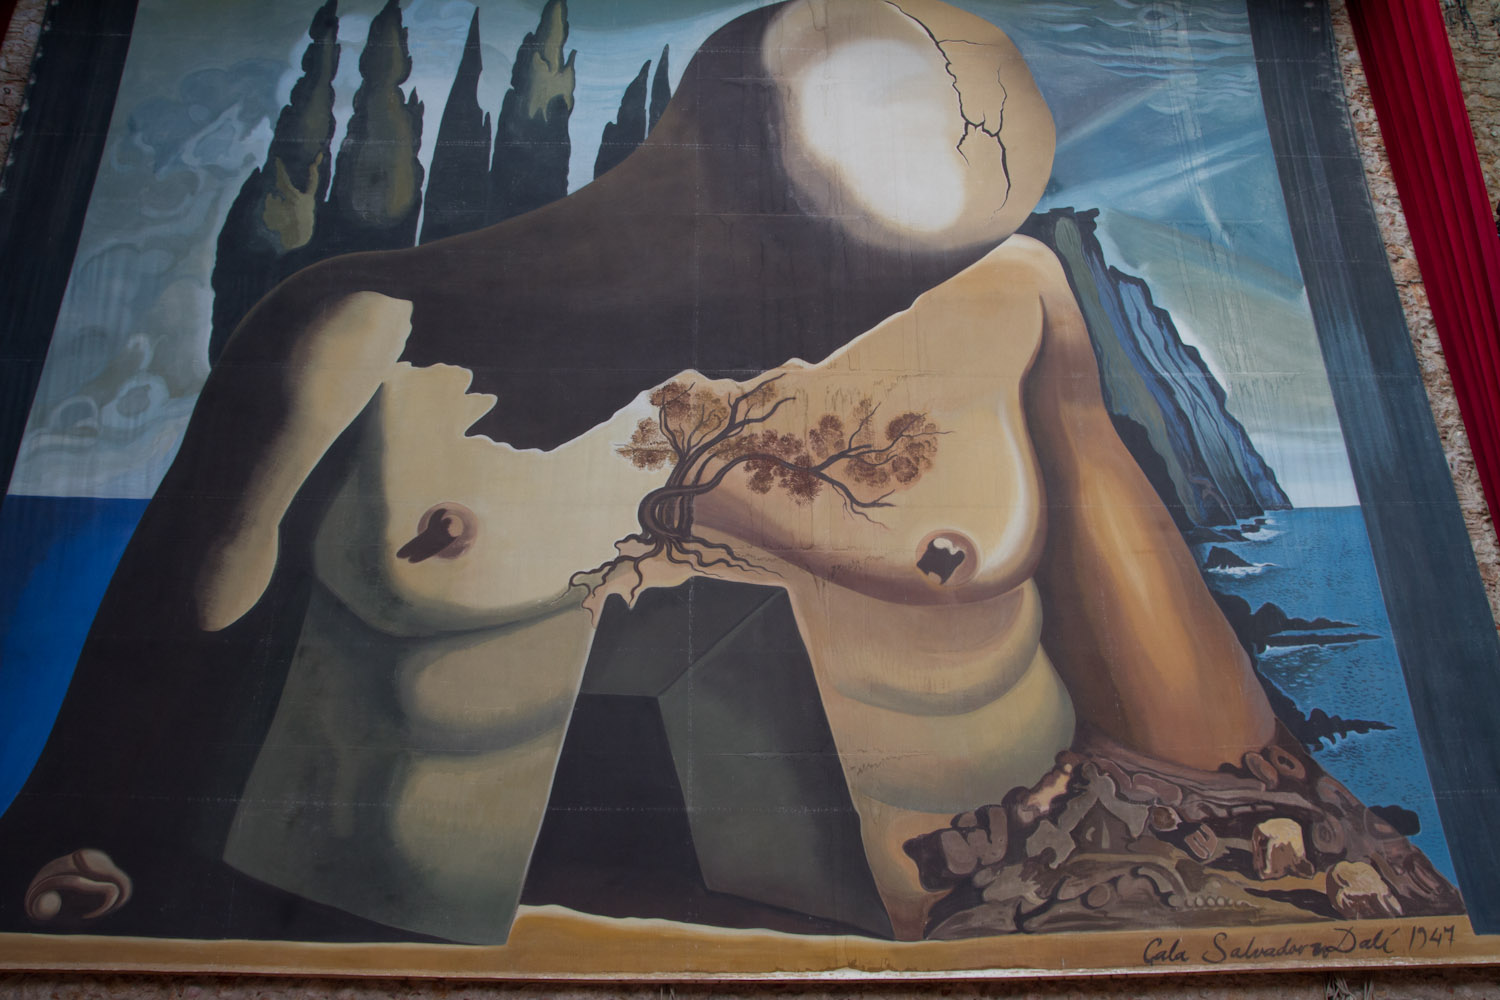 El lienzo Laberinto de Salvador Dalí, en el Teatro-Museo Dalí de Figueres, España